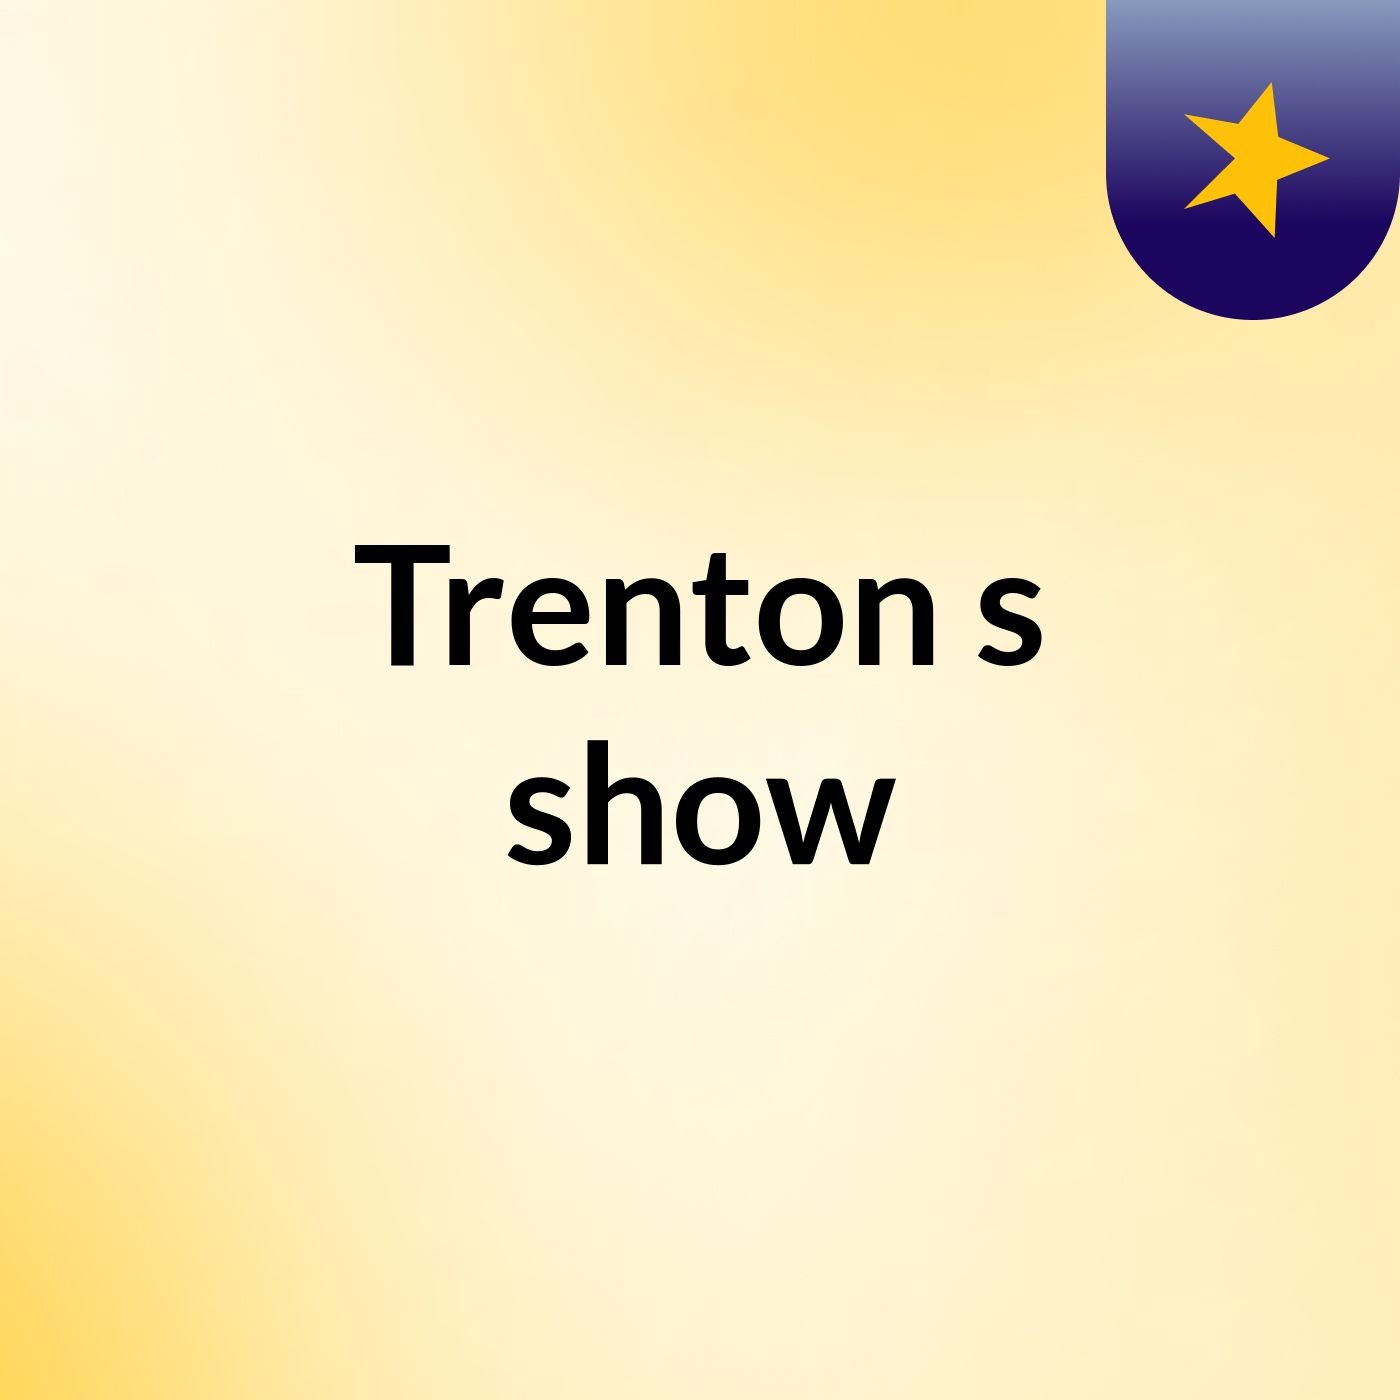 Trenton's show